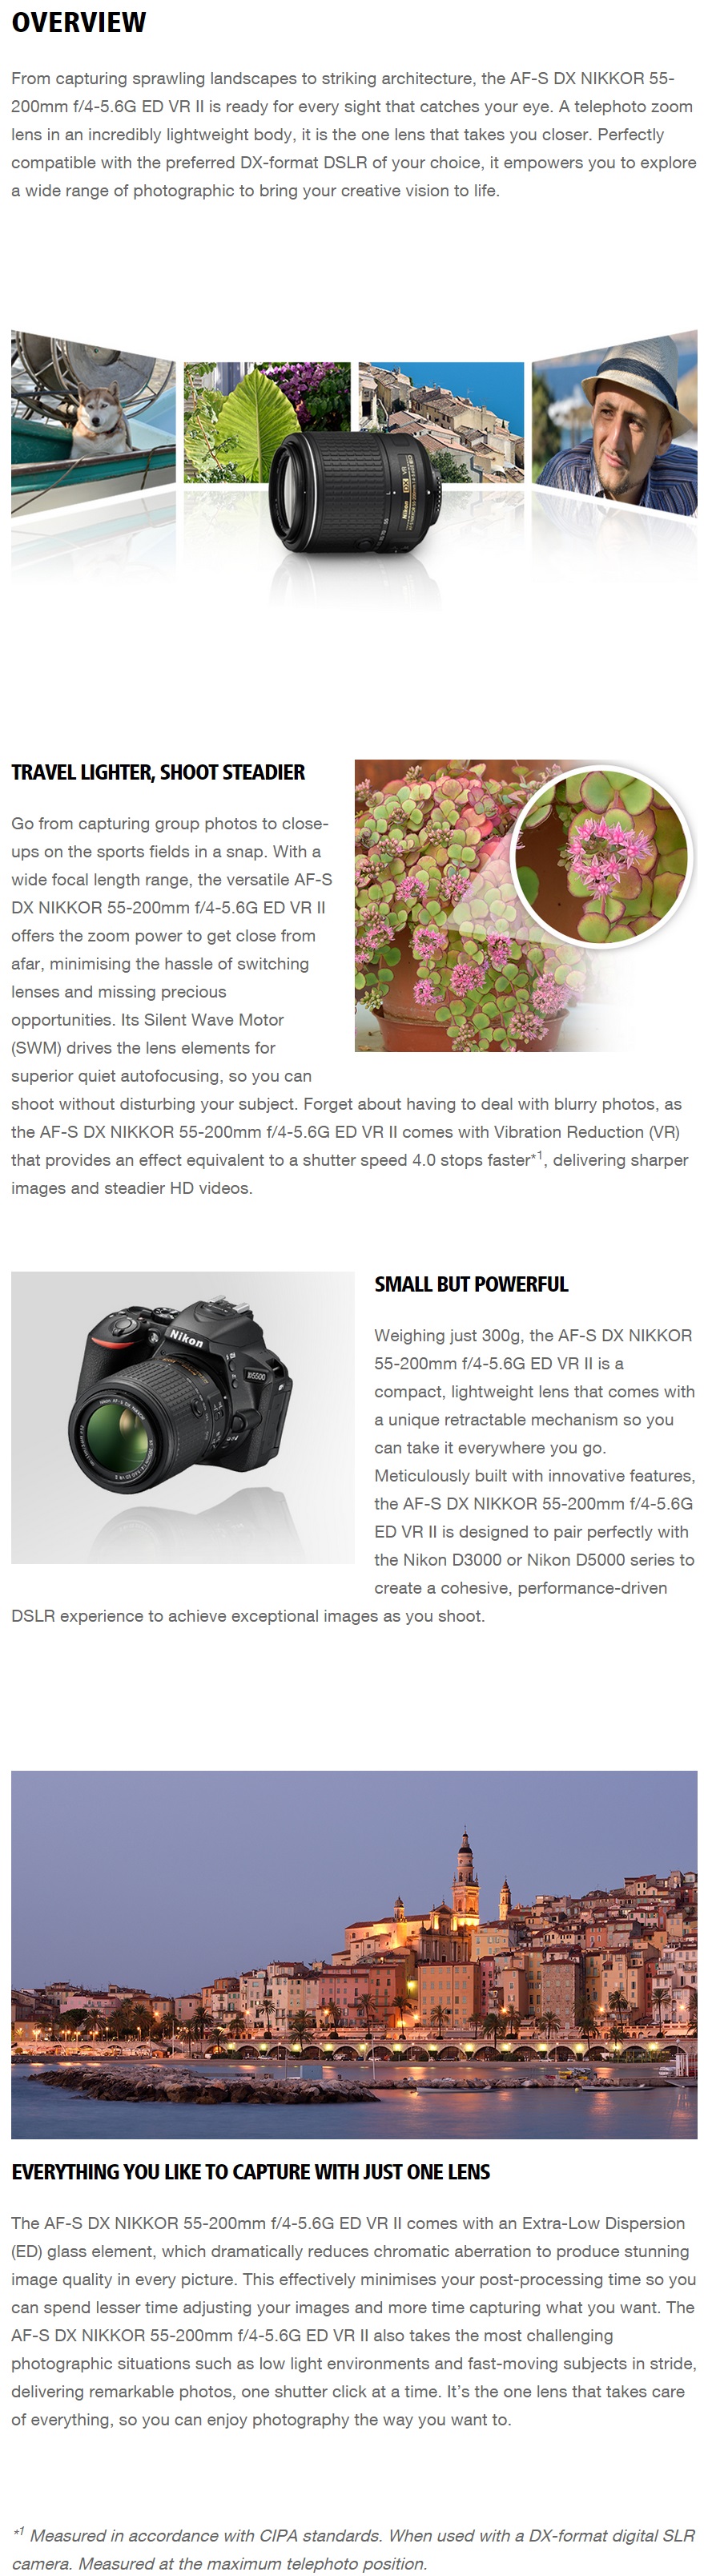 Nikon AF-S DX 55-200mm f4.5-5.6G ED VR Lens